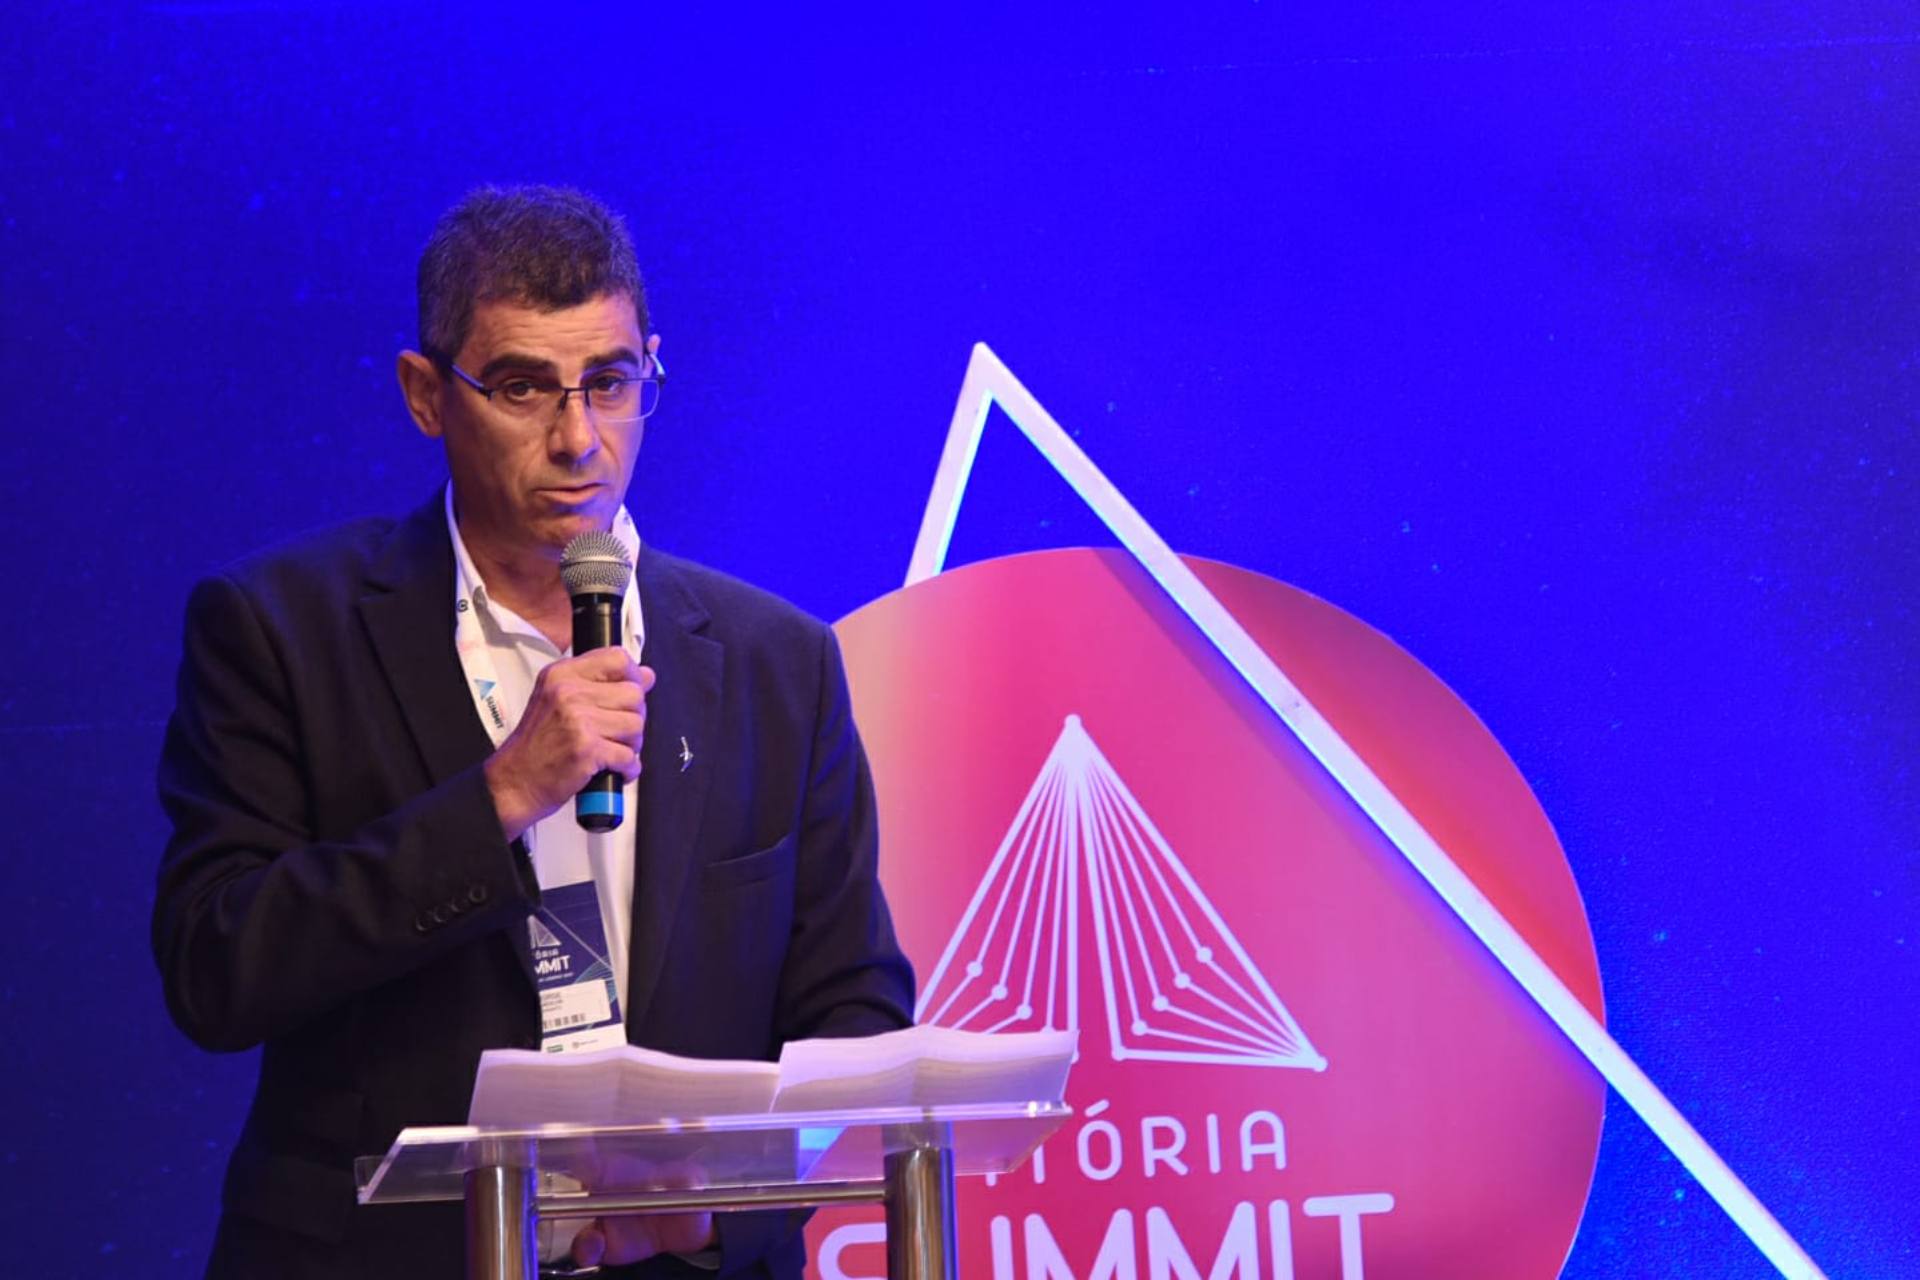 Vitória Summit – Encontro de Líderes 2021, promovido pela Rede Gazeta